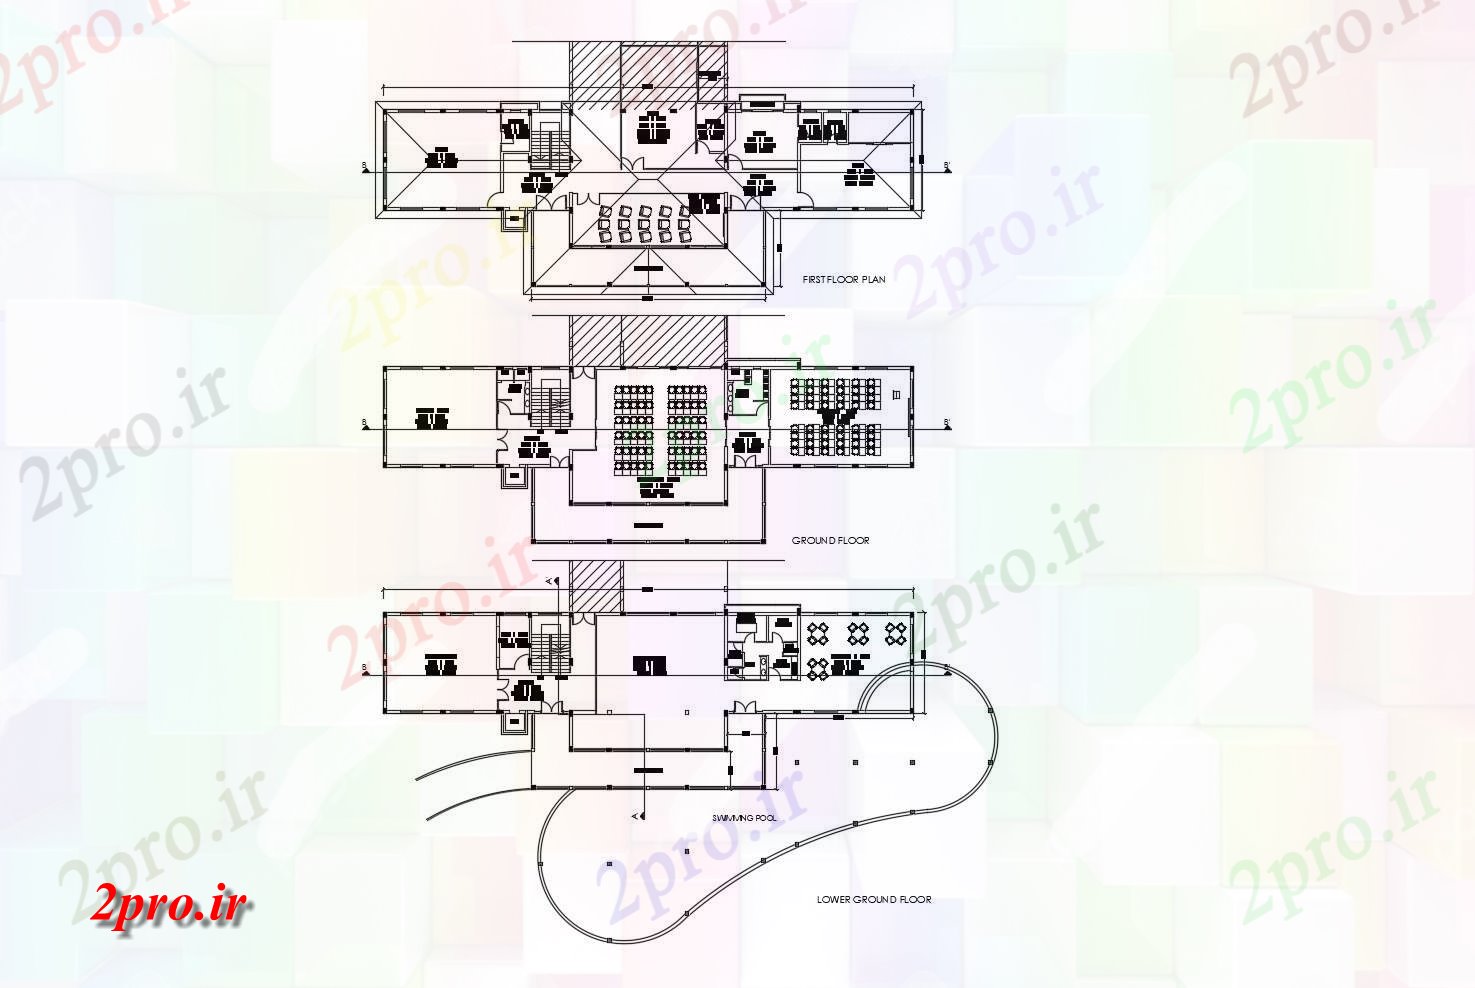 دانلود نقشه باشگاه طرحی محل باشگاه وانجمن 41078mtr 1396mtr با ابعاد جزئیات ایکس 11 در 41 متر (کد85679)